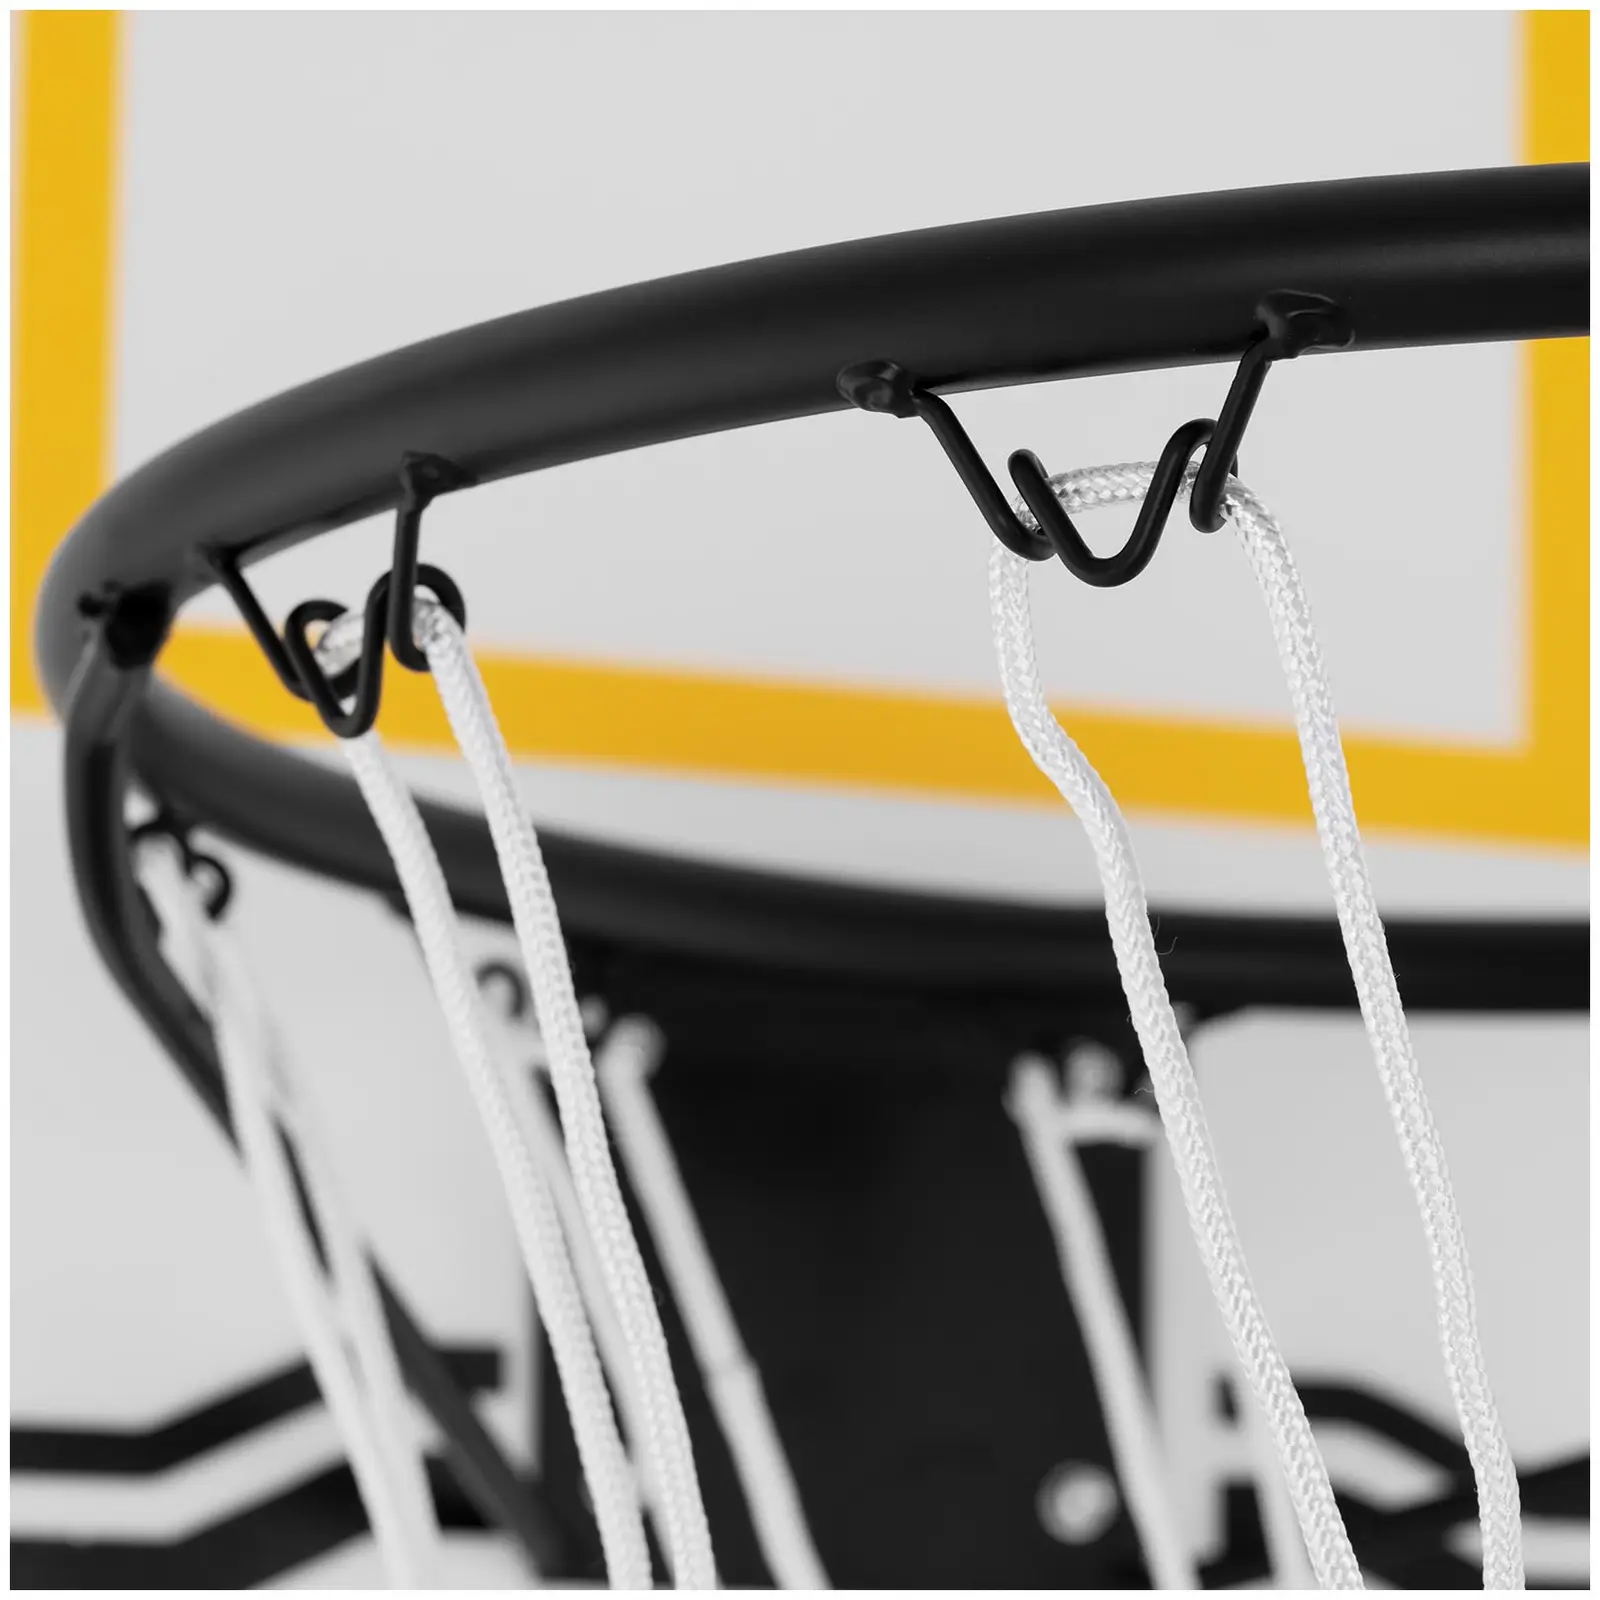 Basketballkorb mit Ständer - höhenverstellbar - 190 bis 260 cm